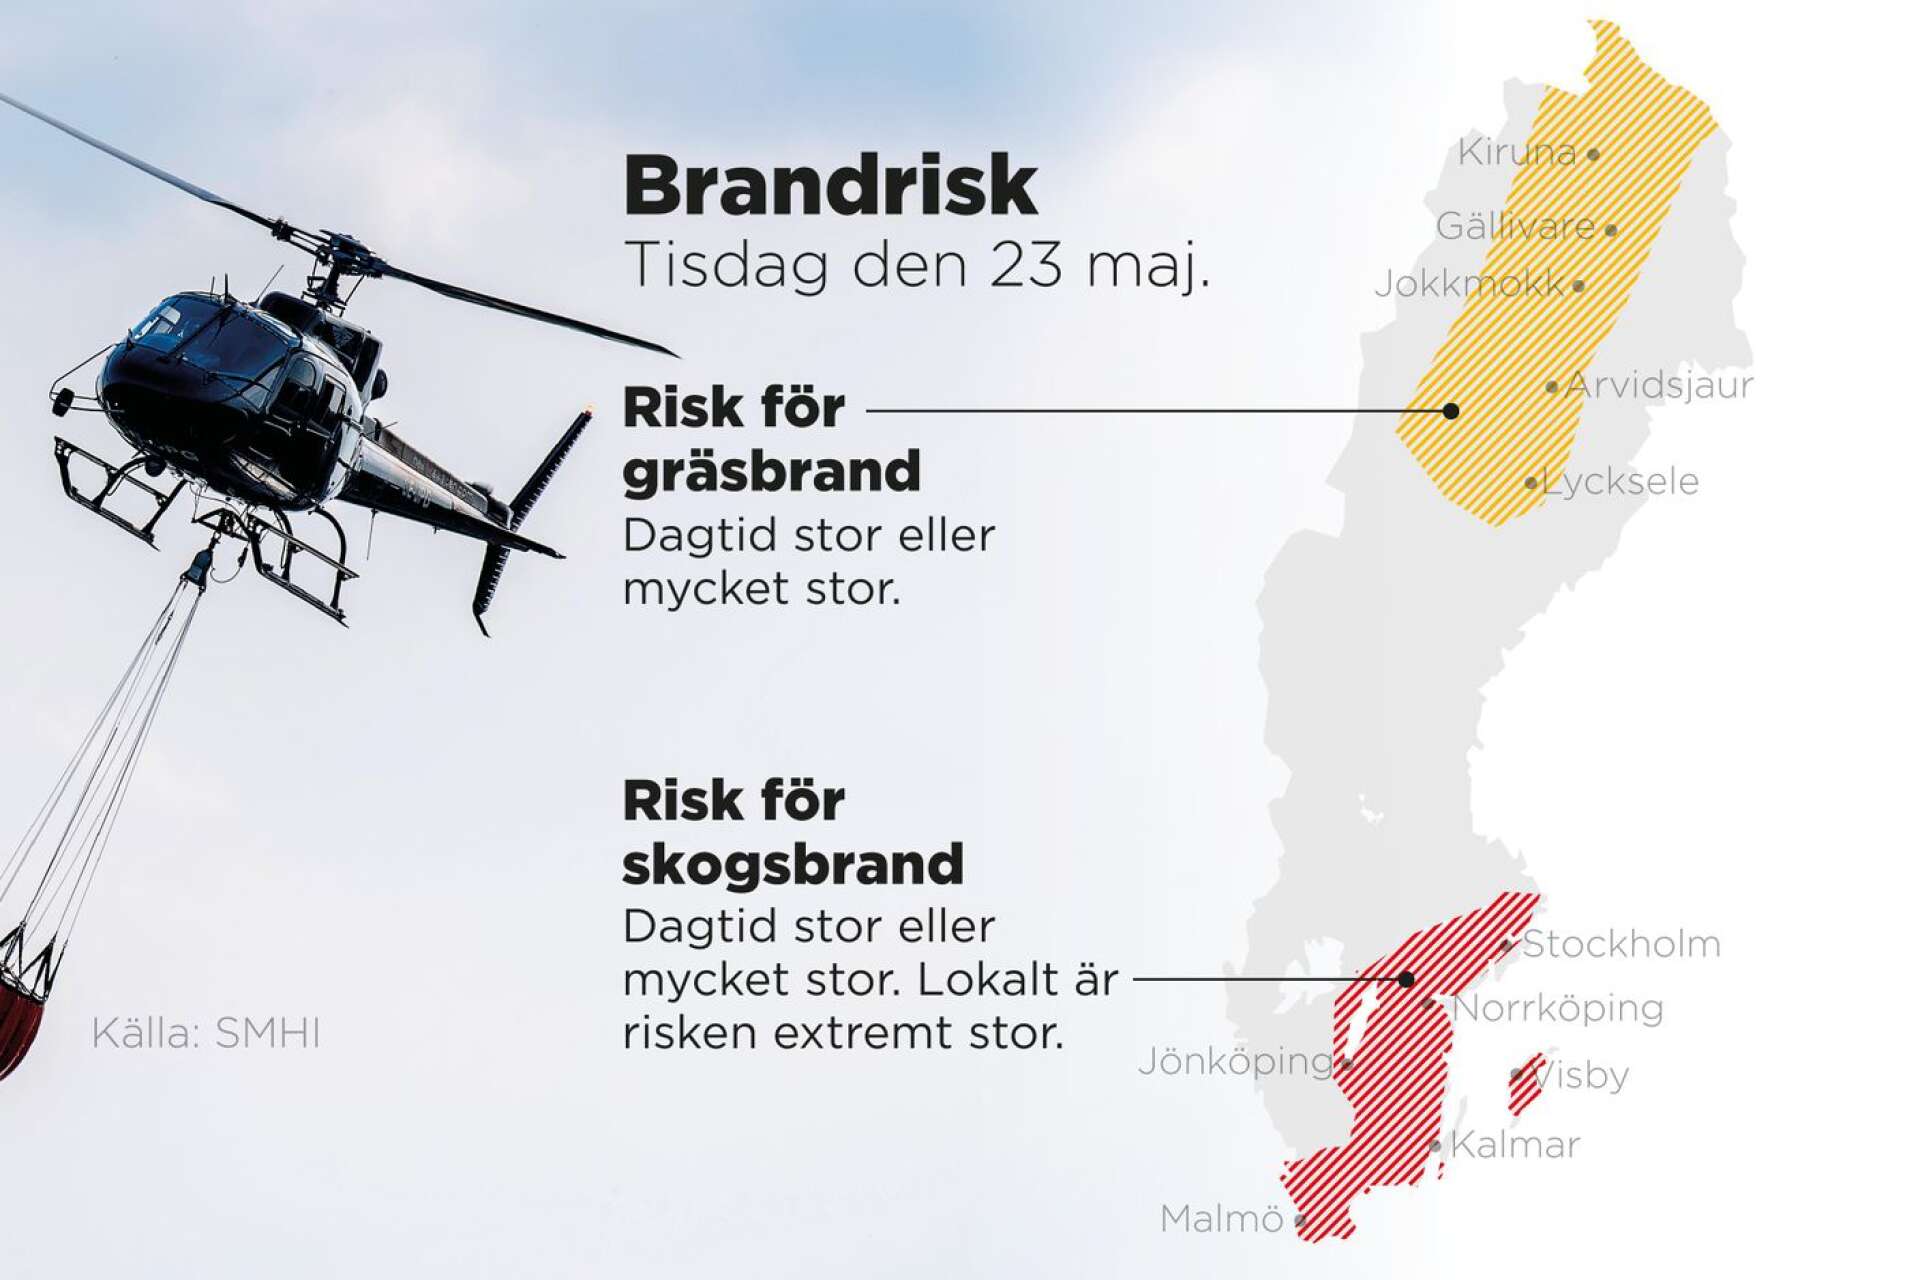 Risk för skogs- och gräsbränder i stora delar av Sverige.